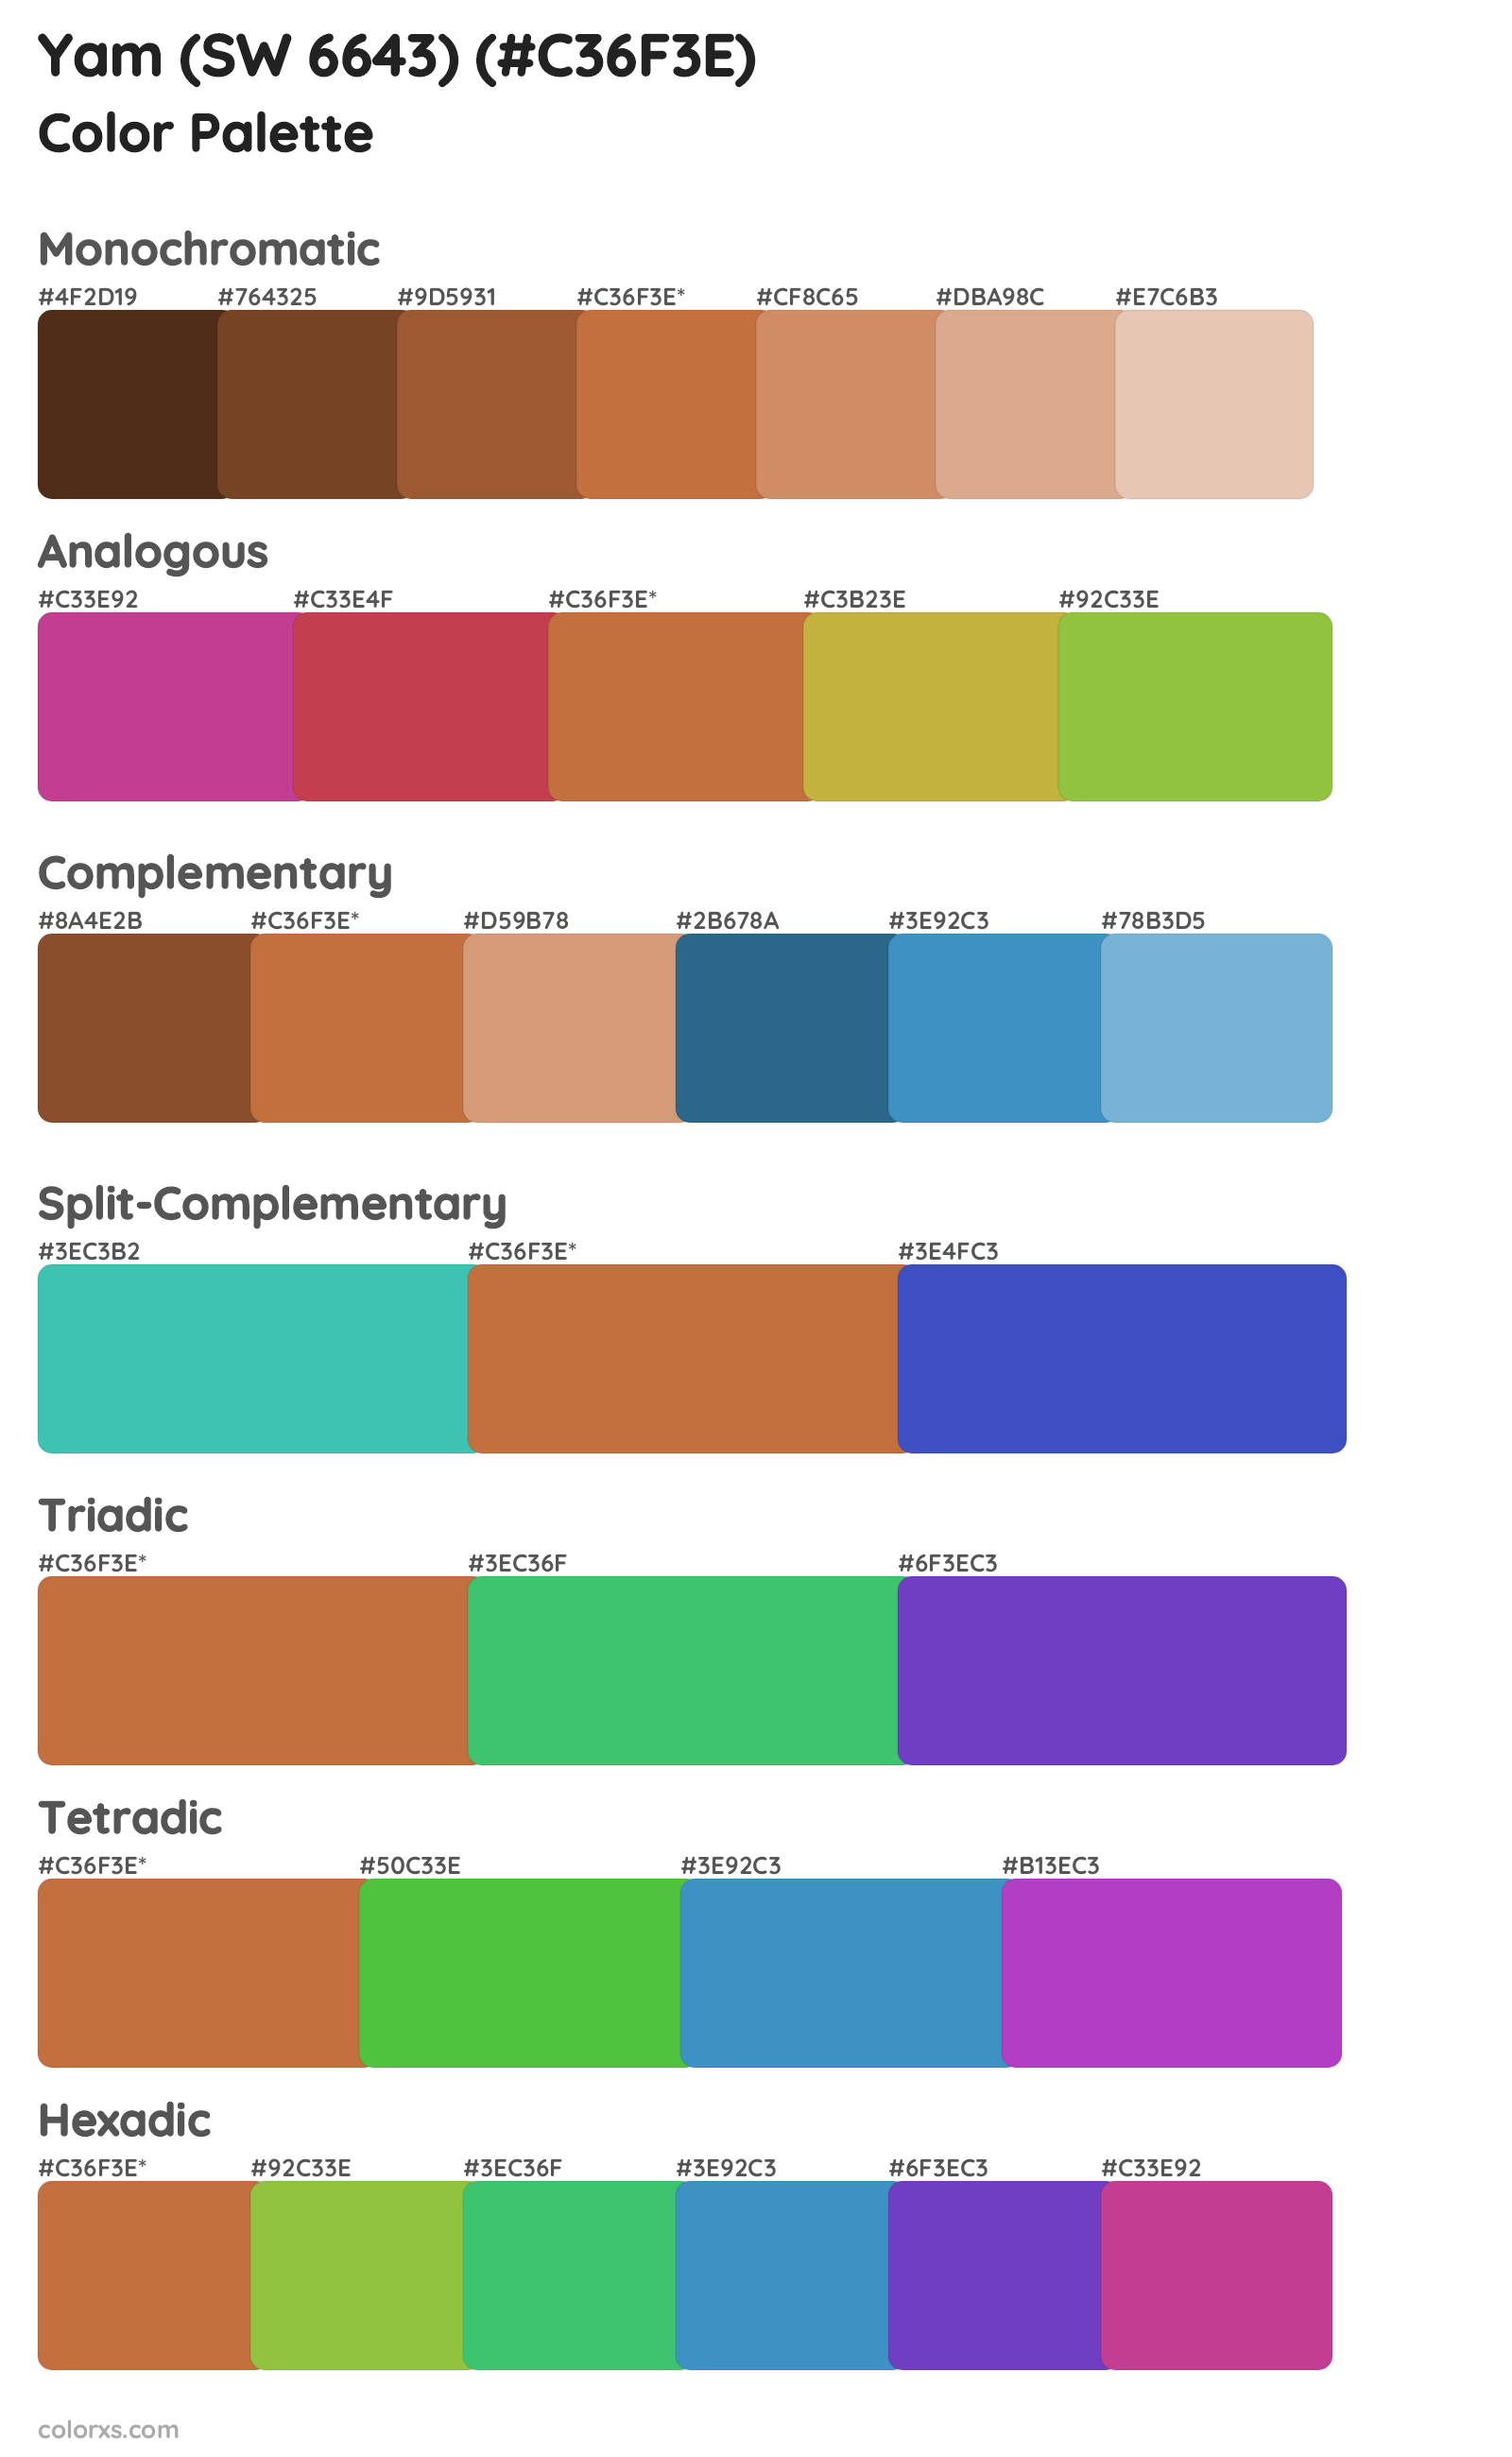 Yam (SW 6643) Color Scheme Palettes